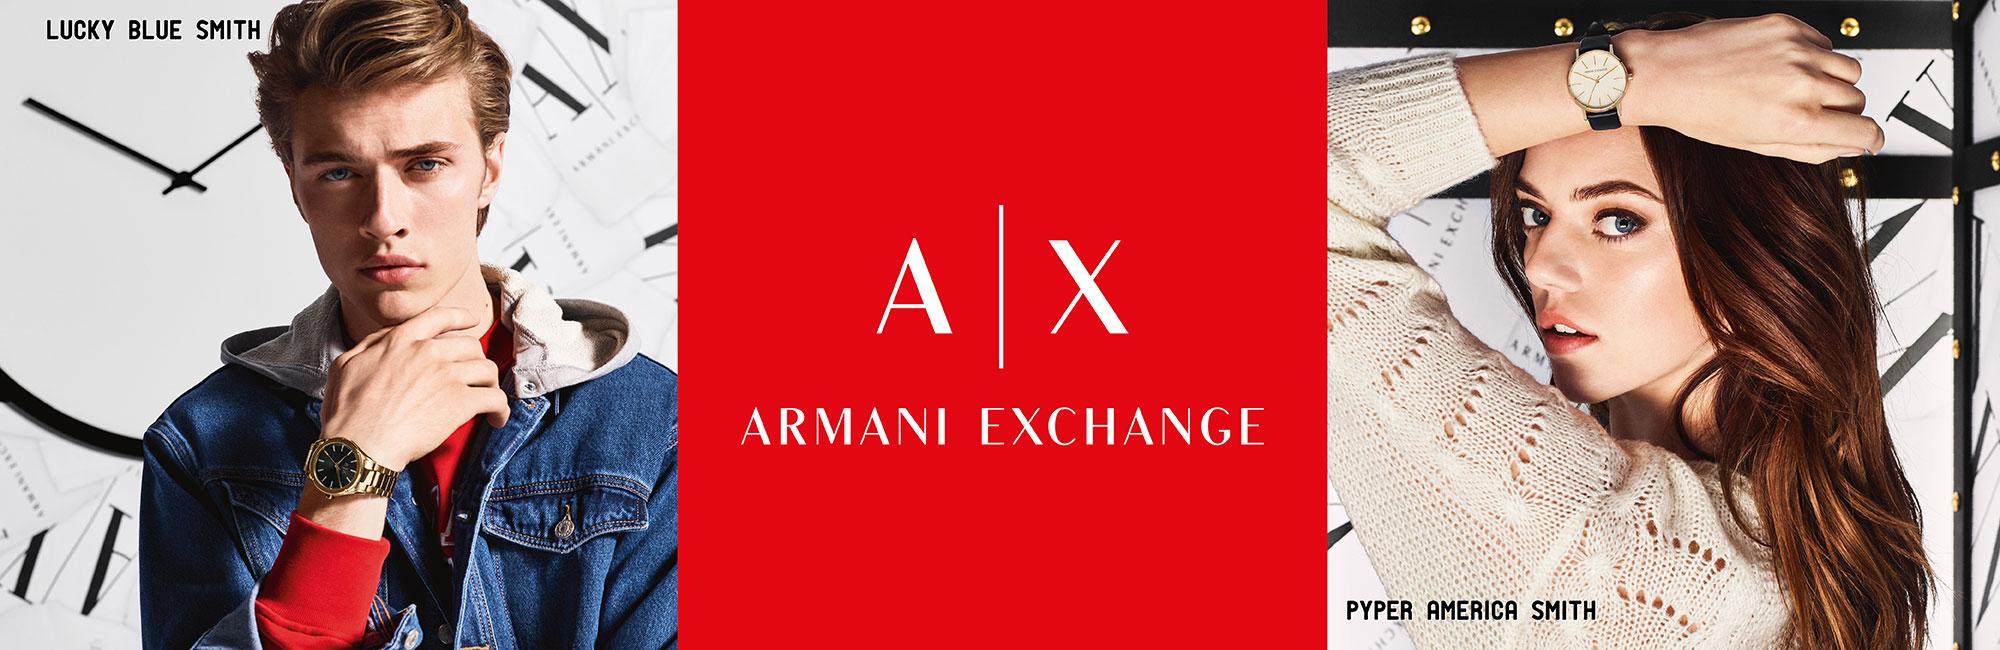 armani exchange company